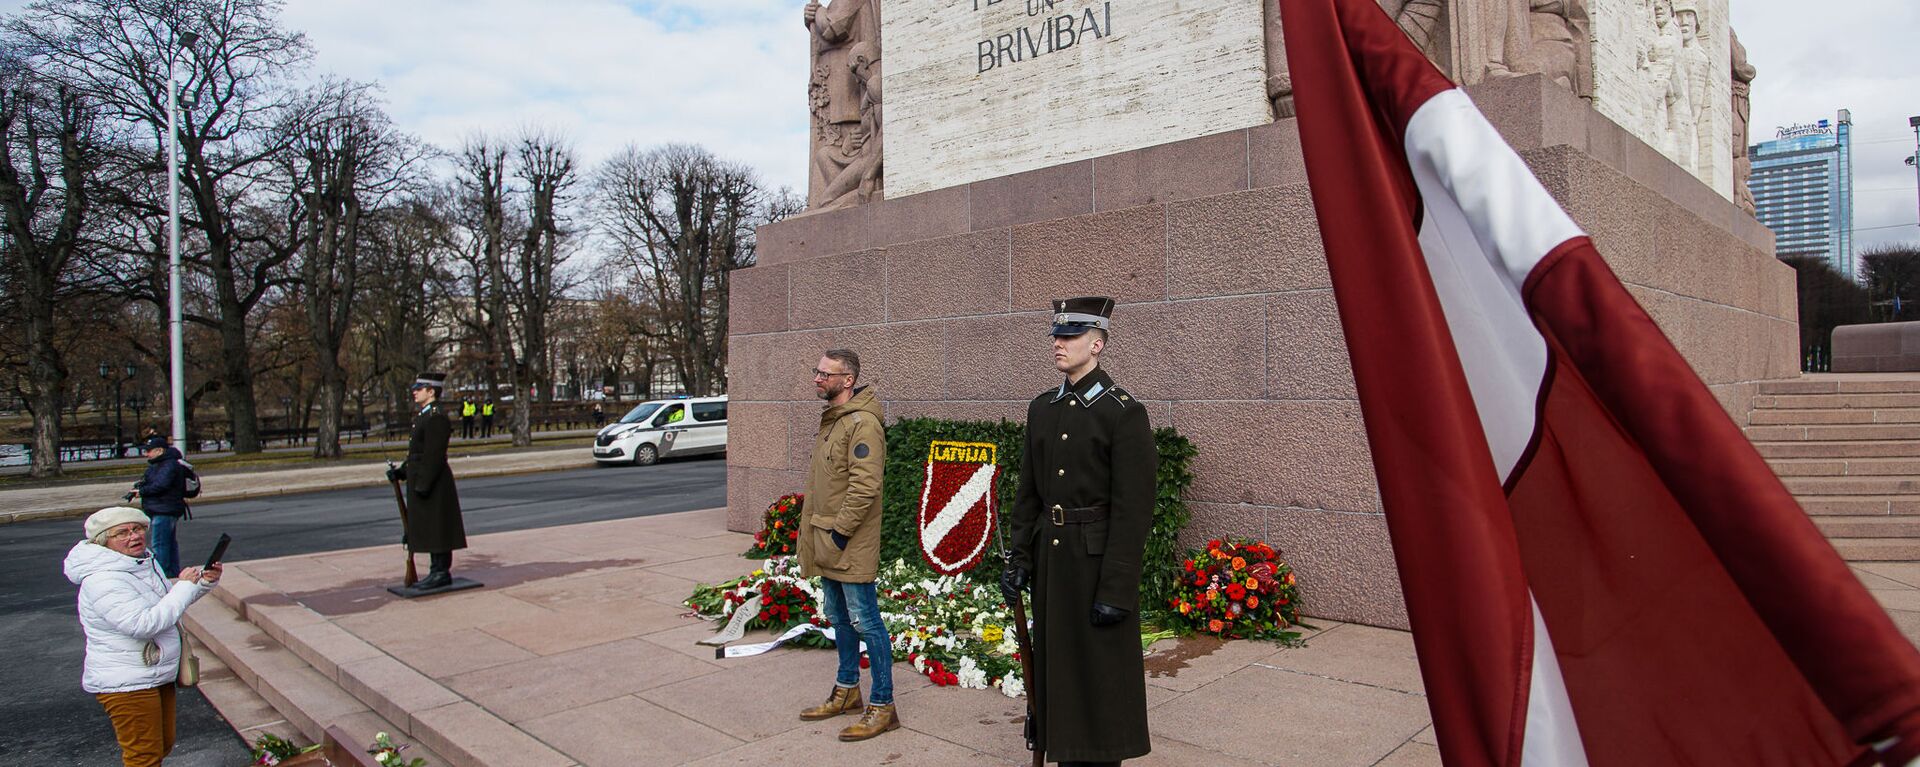 День памяти латышских легионеров Ваффен СС в Риге, 16 марта - Sputnik Латвия, 1920, 16.03.2021